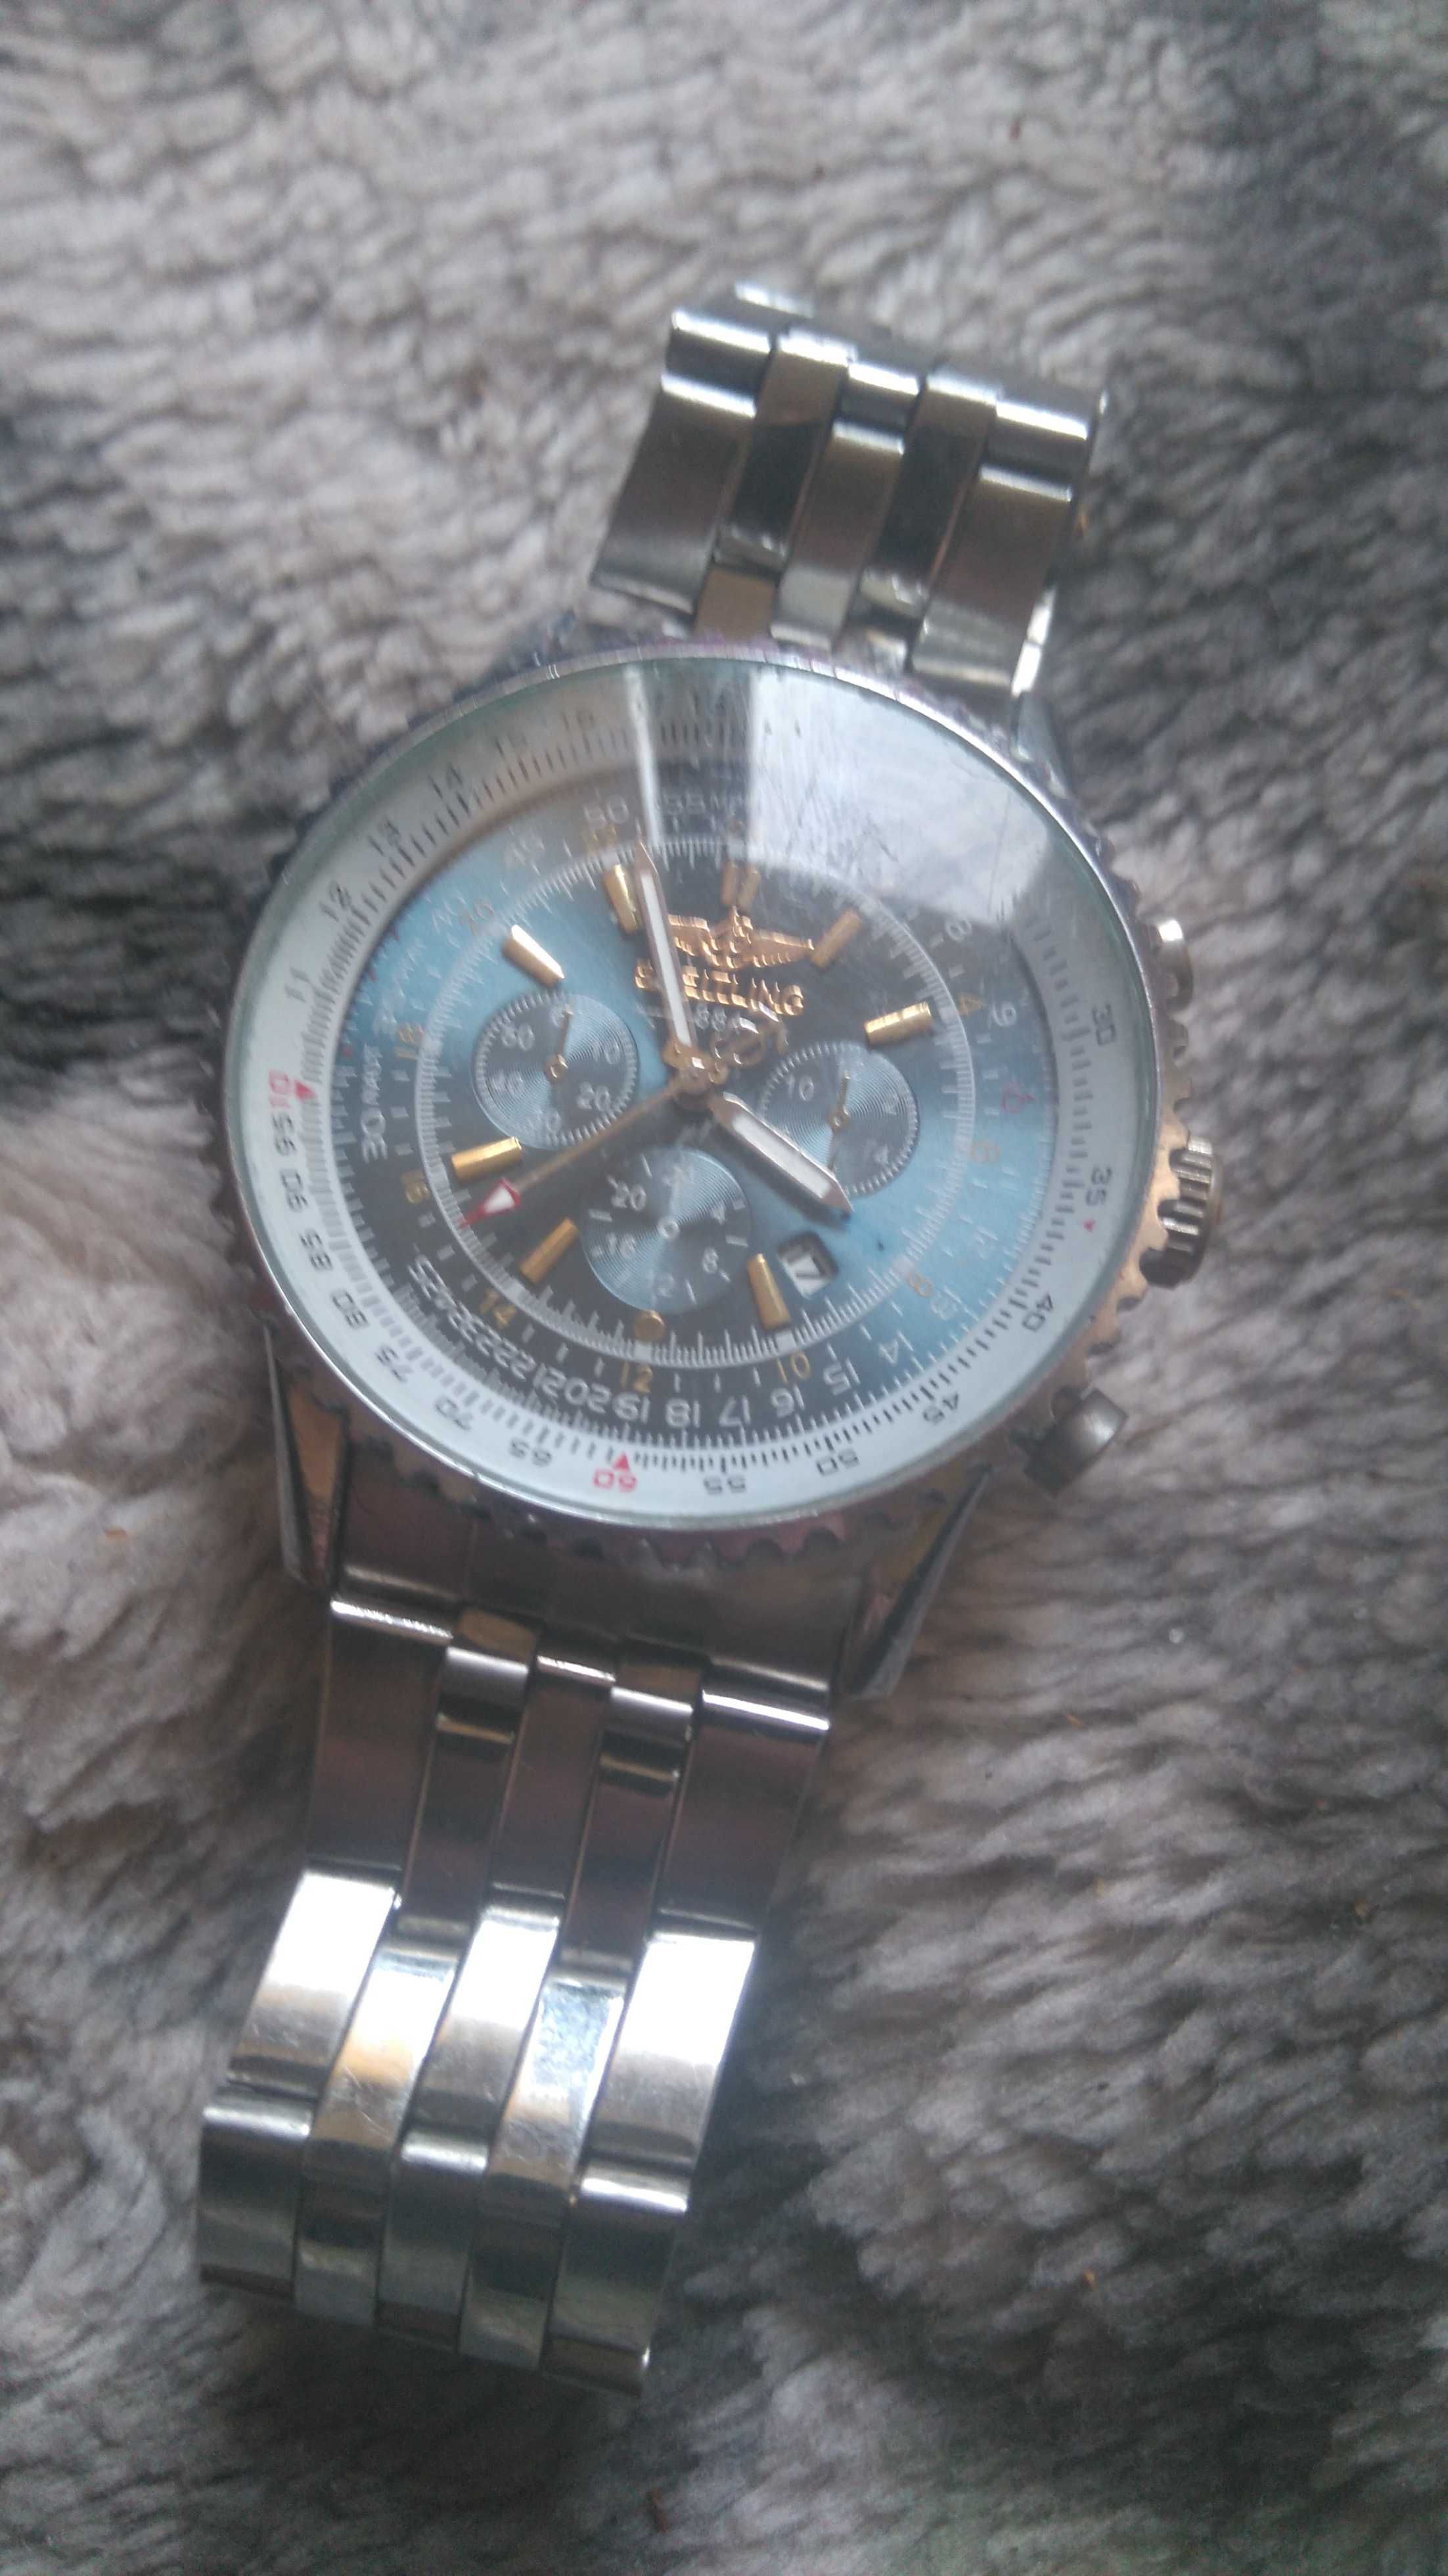 Breitling zegarek meski dla pilotow